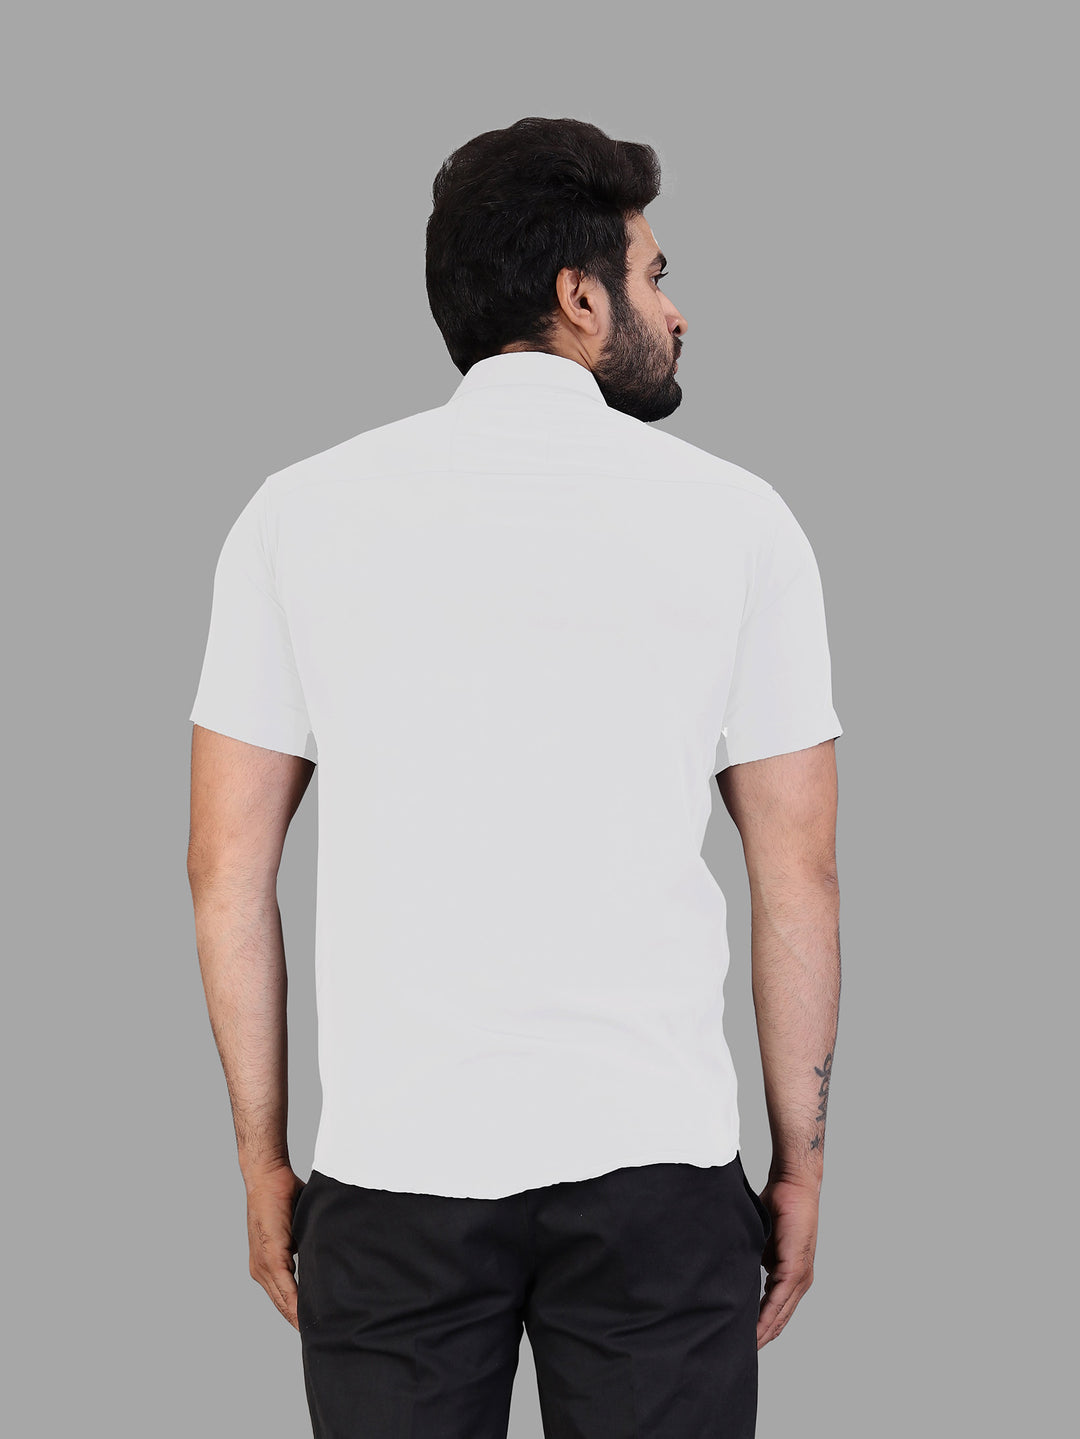 White Expandable Short Sleeve Shirt